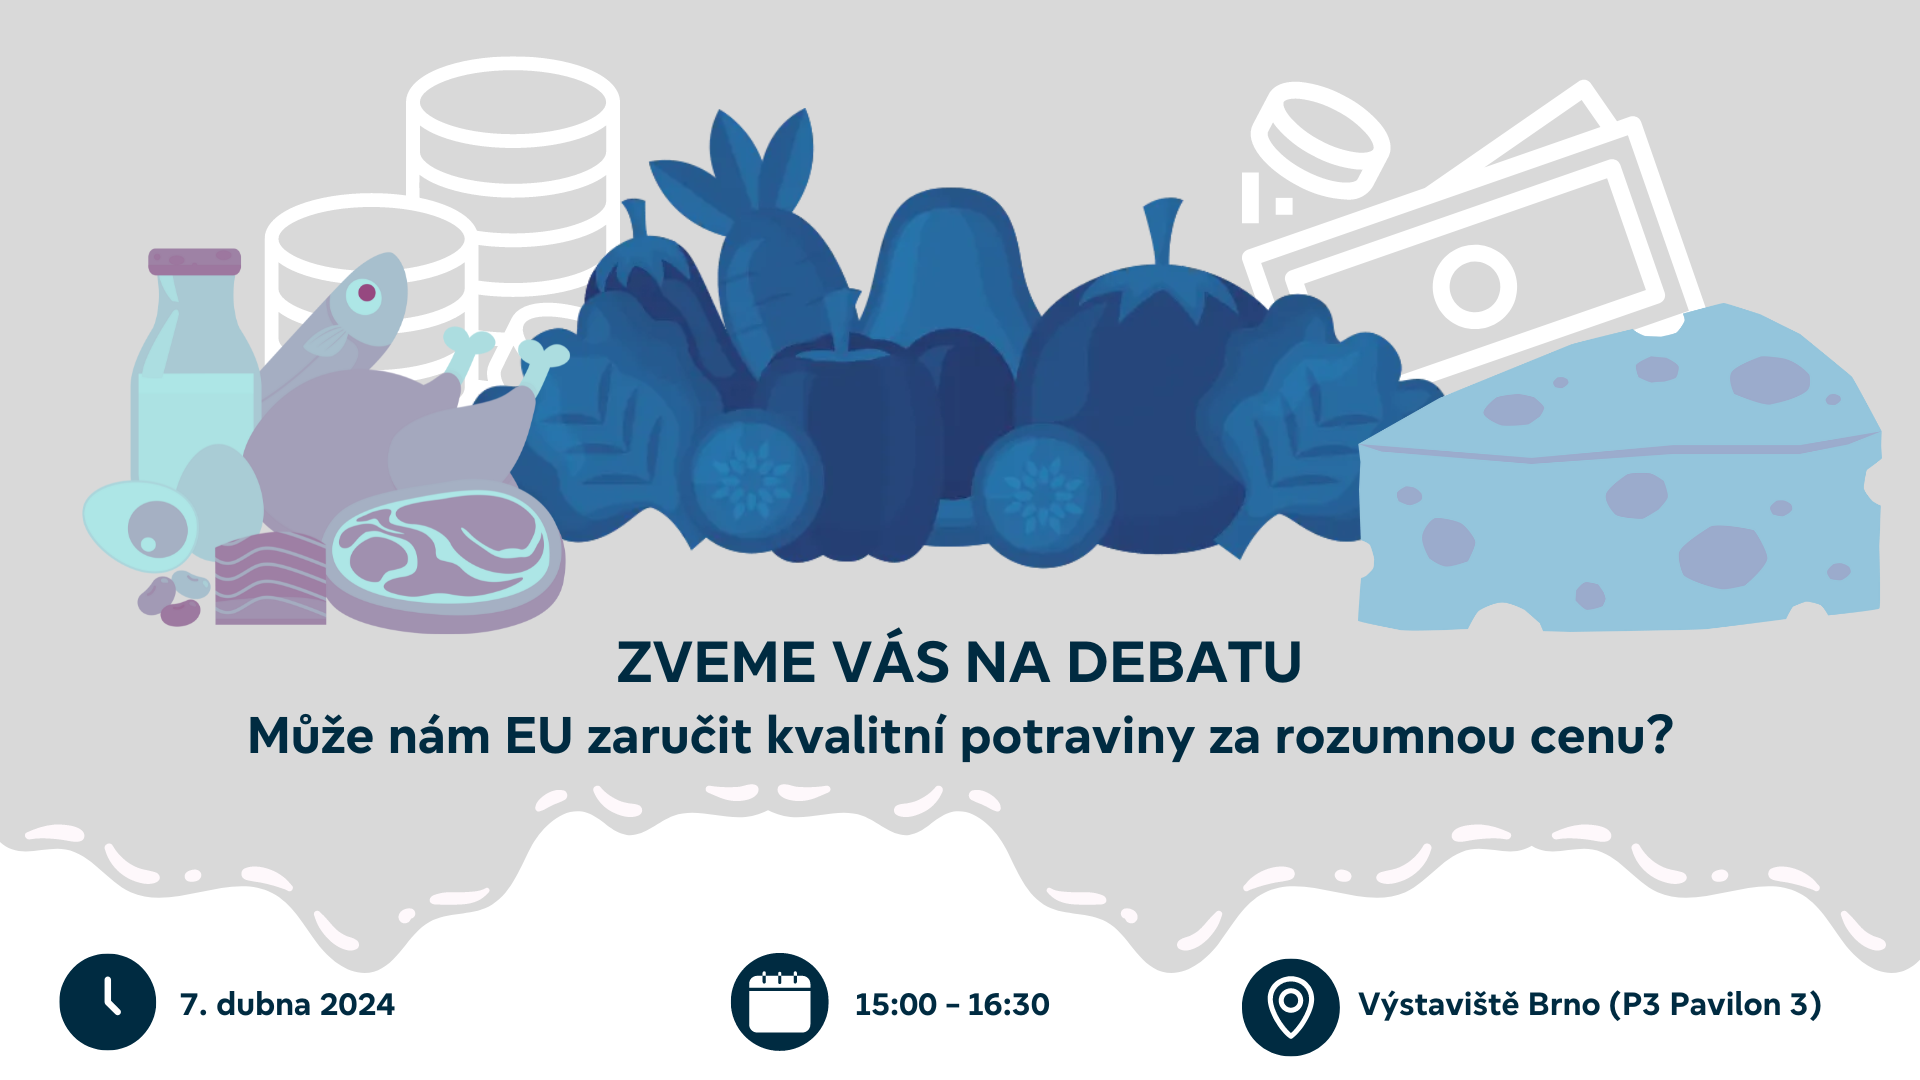 Pozvánka na setkání europoslanců a expertů s veřejností 7.4. 2024 od 15:00 do 16:30 hodin, veletrh TECHAGRO 2024, výstaviště Brno.